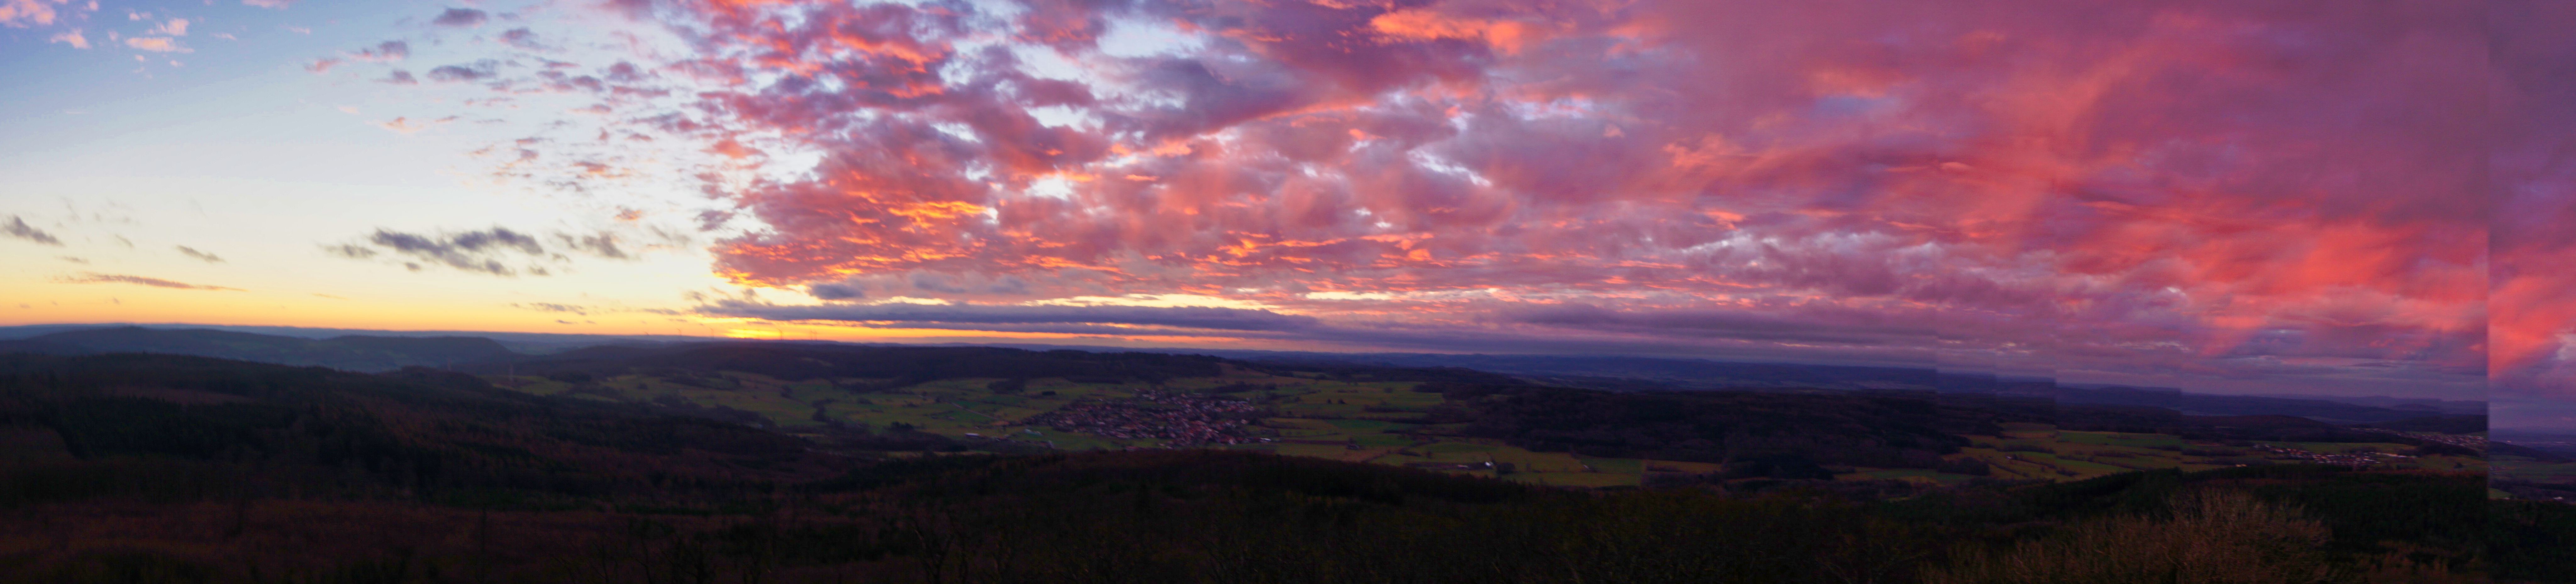 Panorama bei Sonnenuntergang vom Aussichtsturm, Motten.
